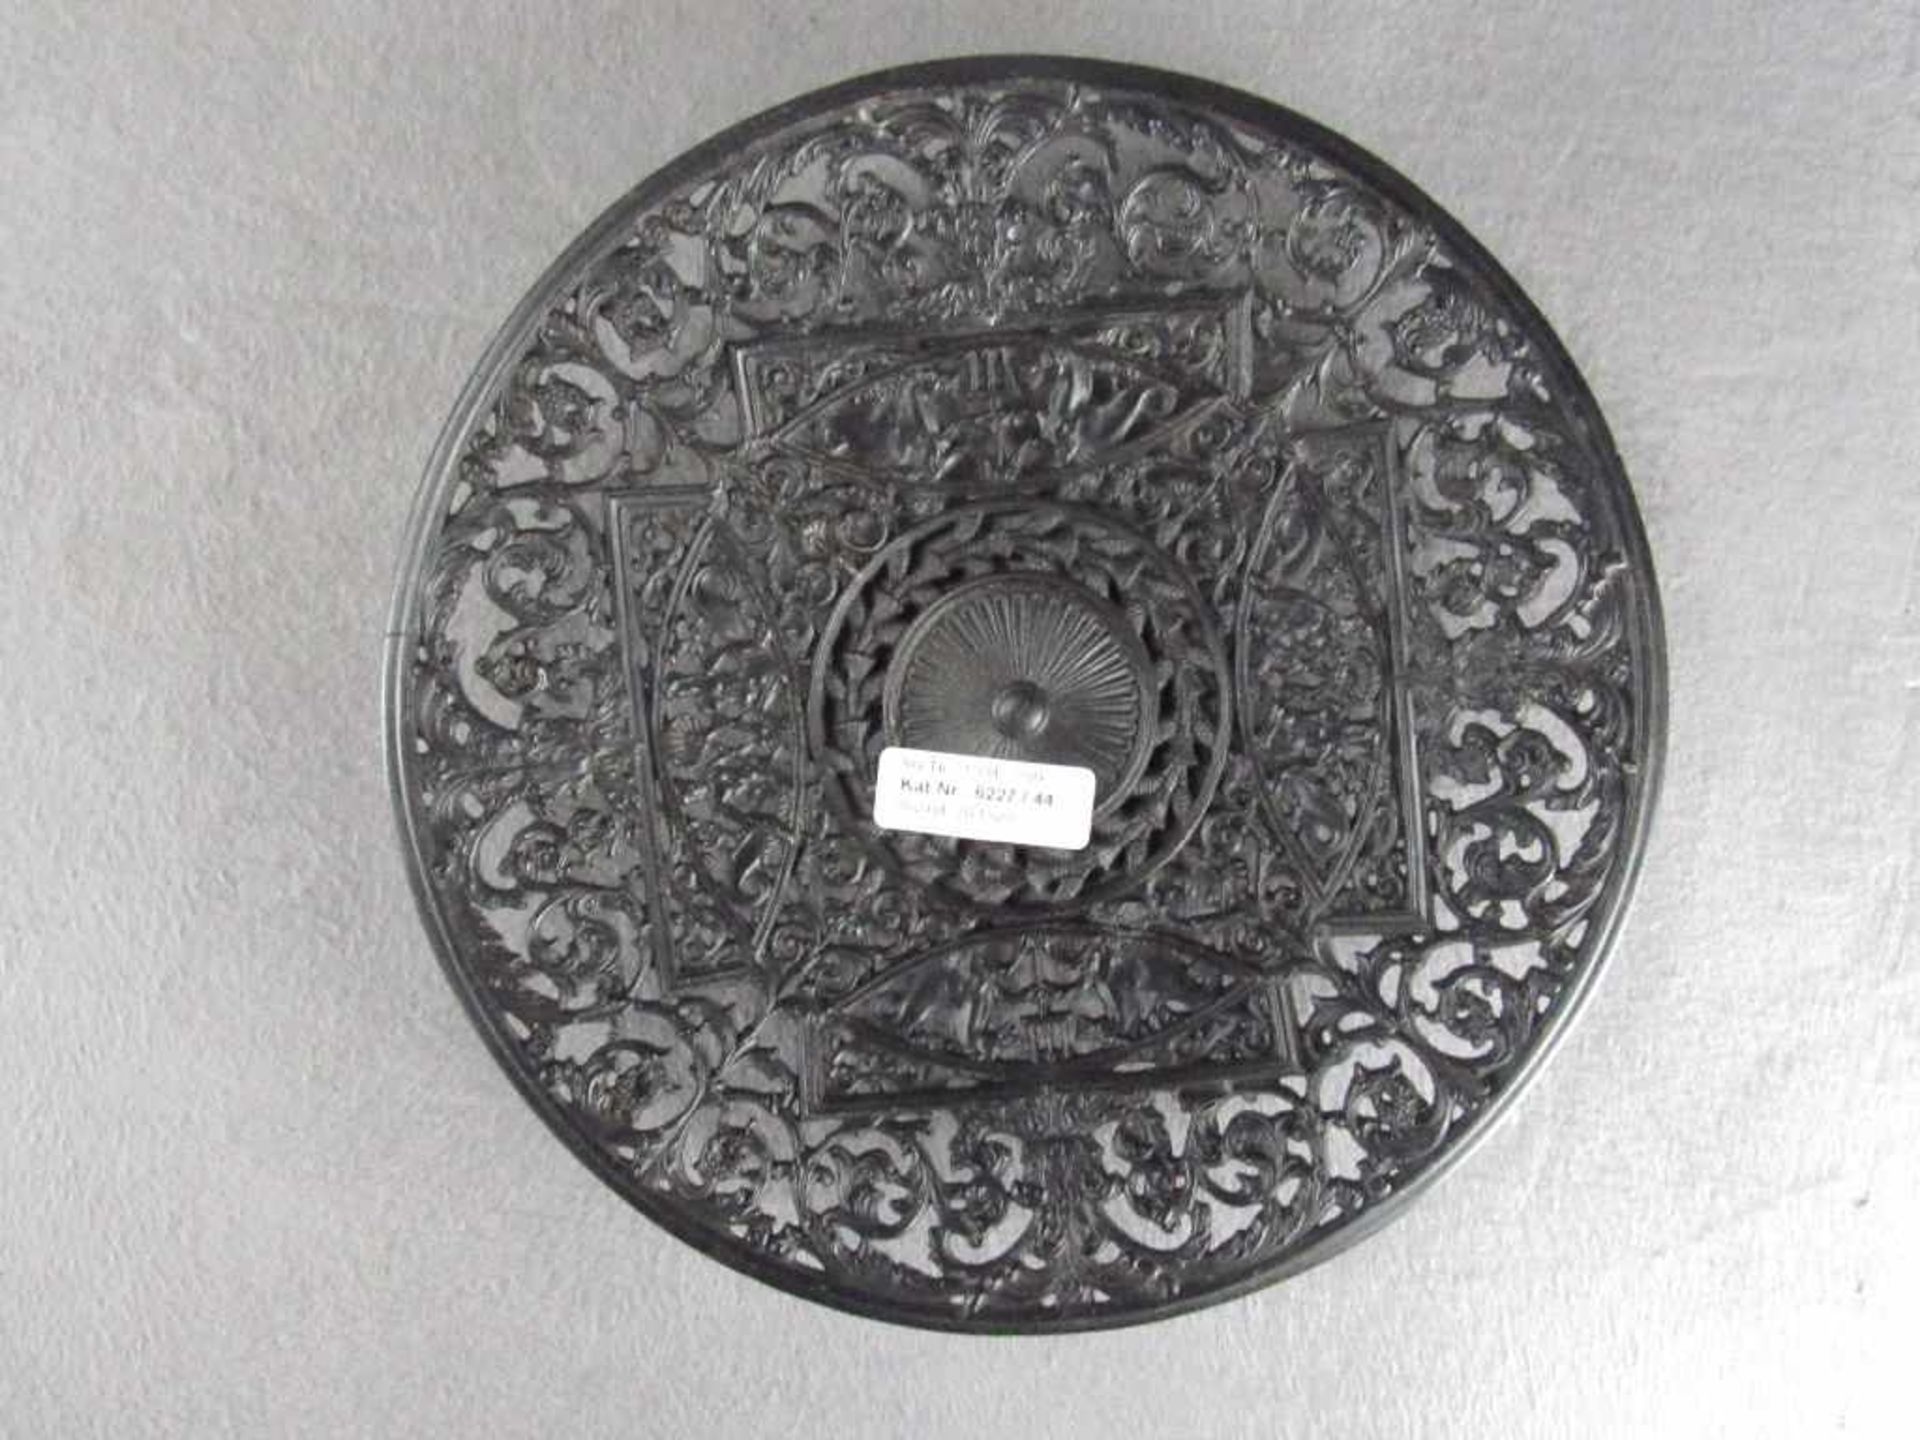 Wandteller Metall wohl Berliner Eisen gemarkt Buderus 1731 Durchmesser 27,5cm